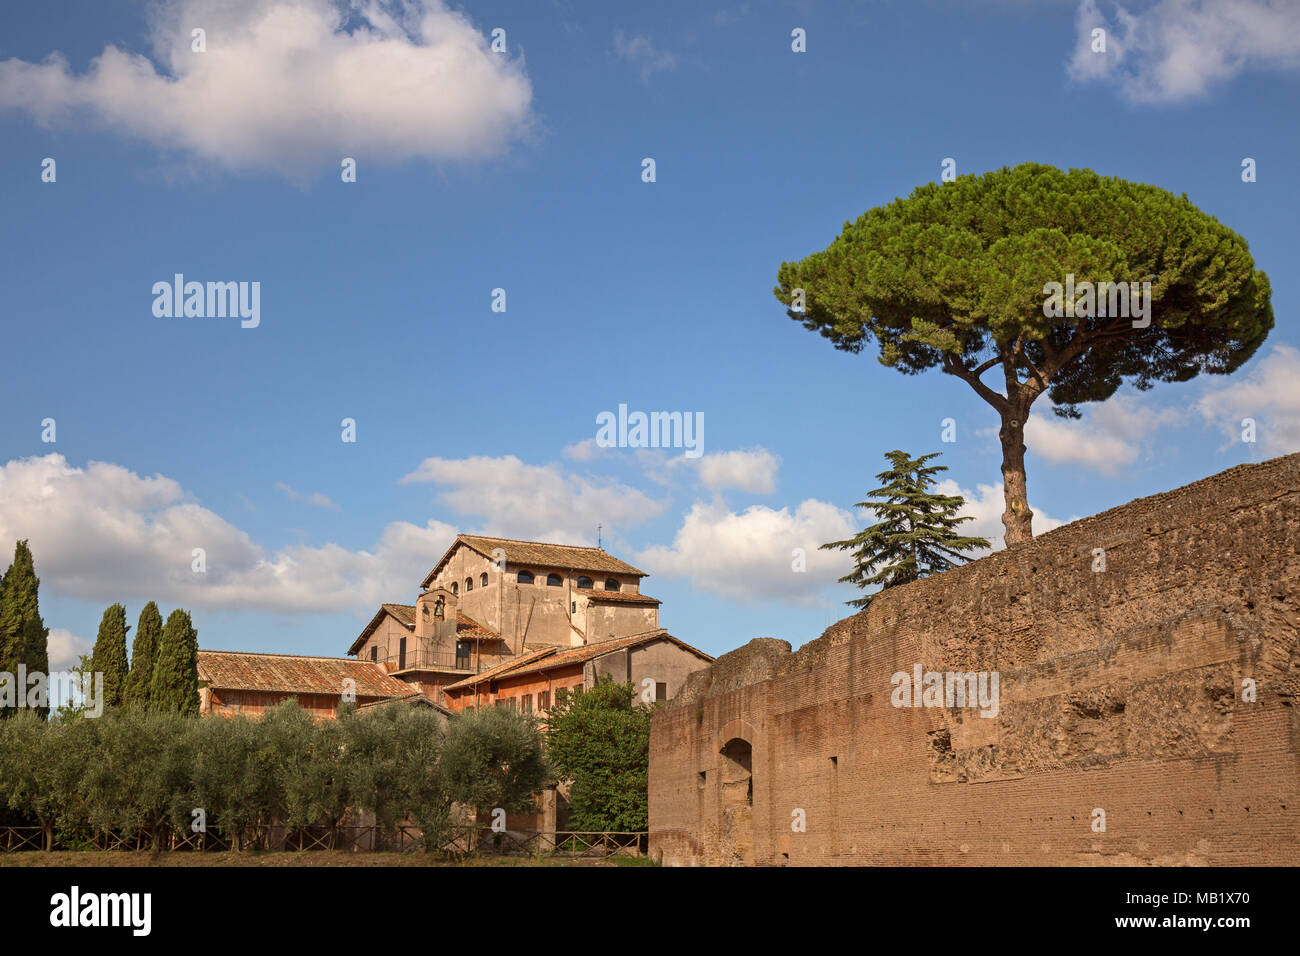 San Bonaventura al Palatino, il XVII secolo il monastero francescano sul Colle Palatino in Roma, Italia. Un pino di pietra può essere visto sulla parete, questi tree Foto Stock